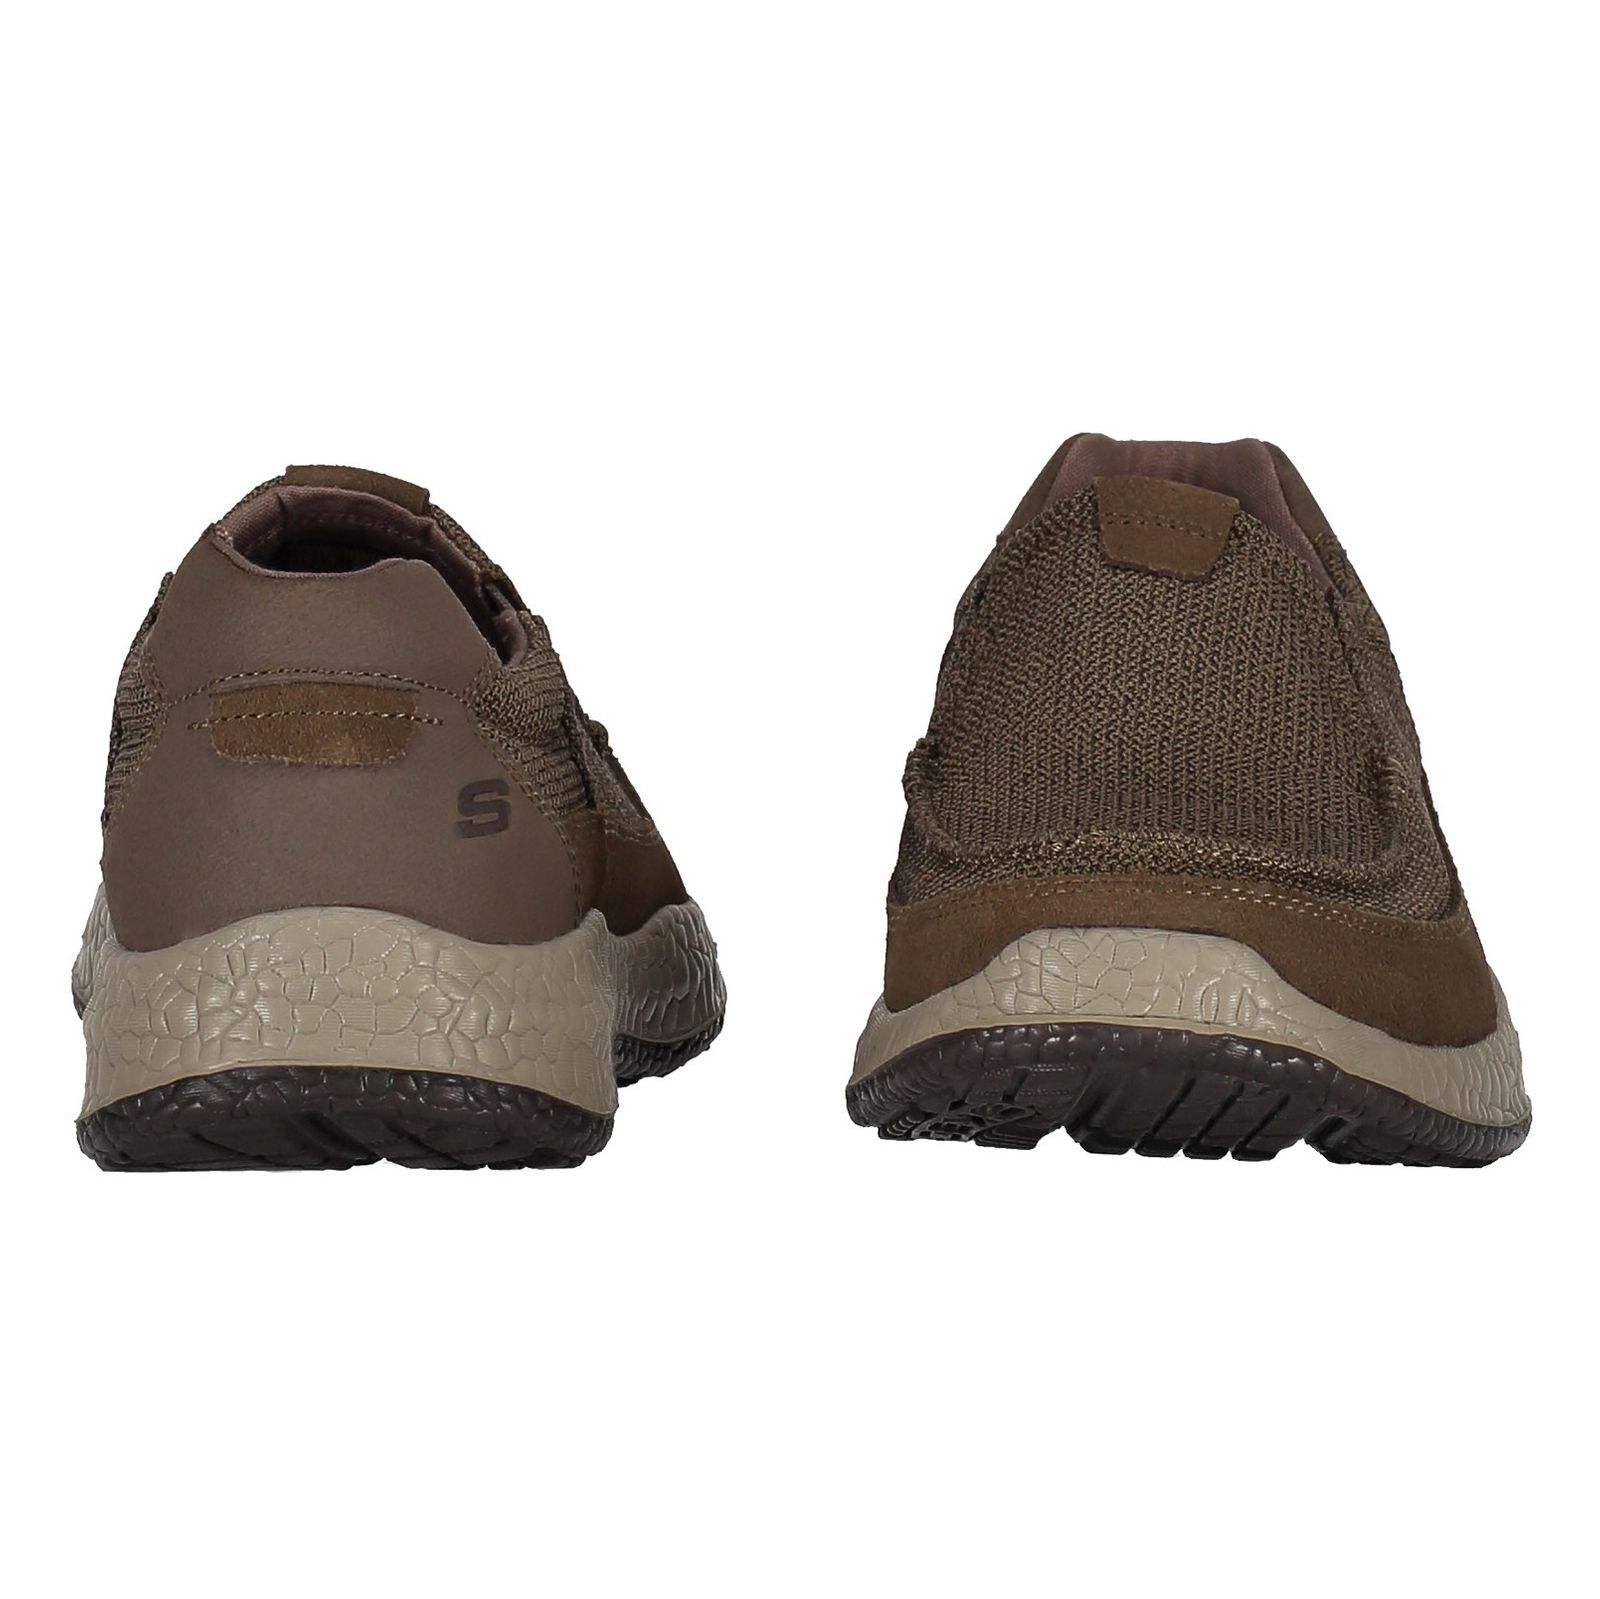 کفش راحتی پارچه ای مردانه Bursen Kinto - اسکچرز - قهوه اي روشن - 5